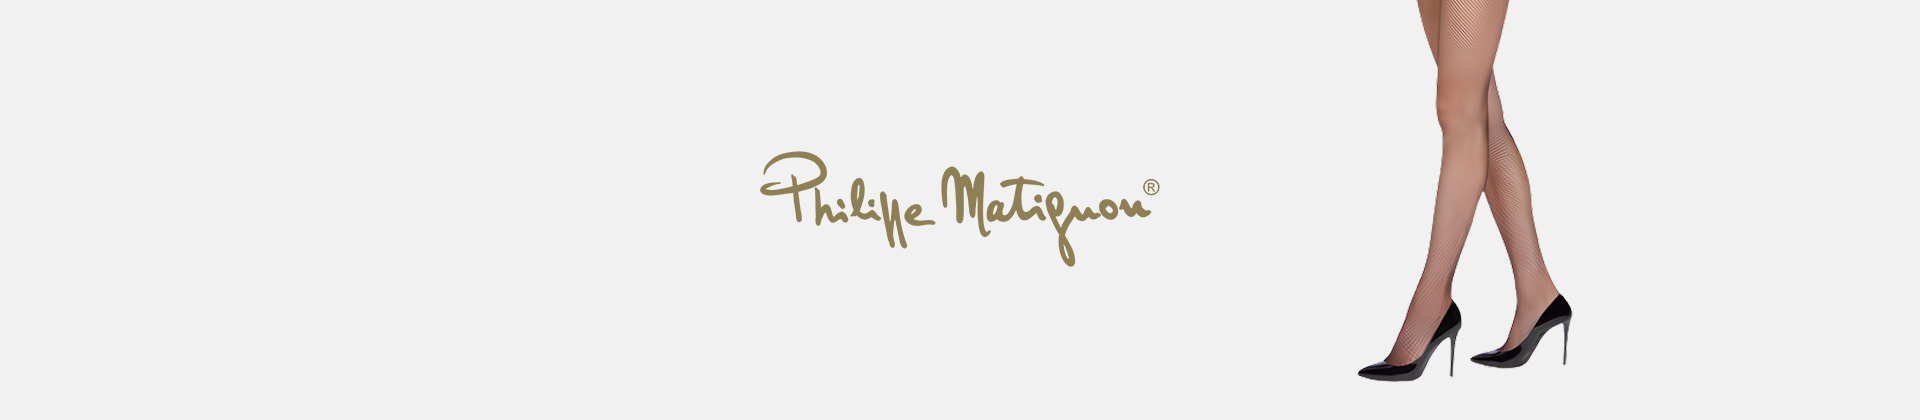 Philippe Matignon calze online